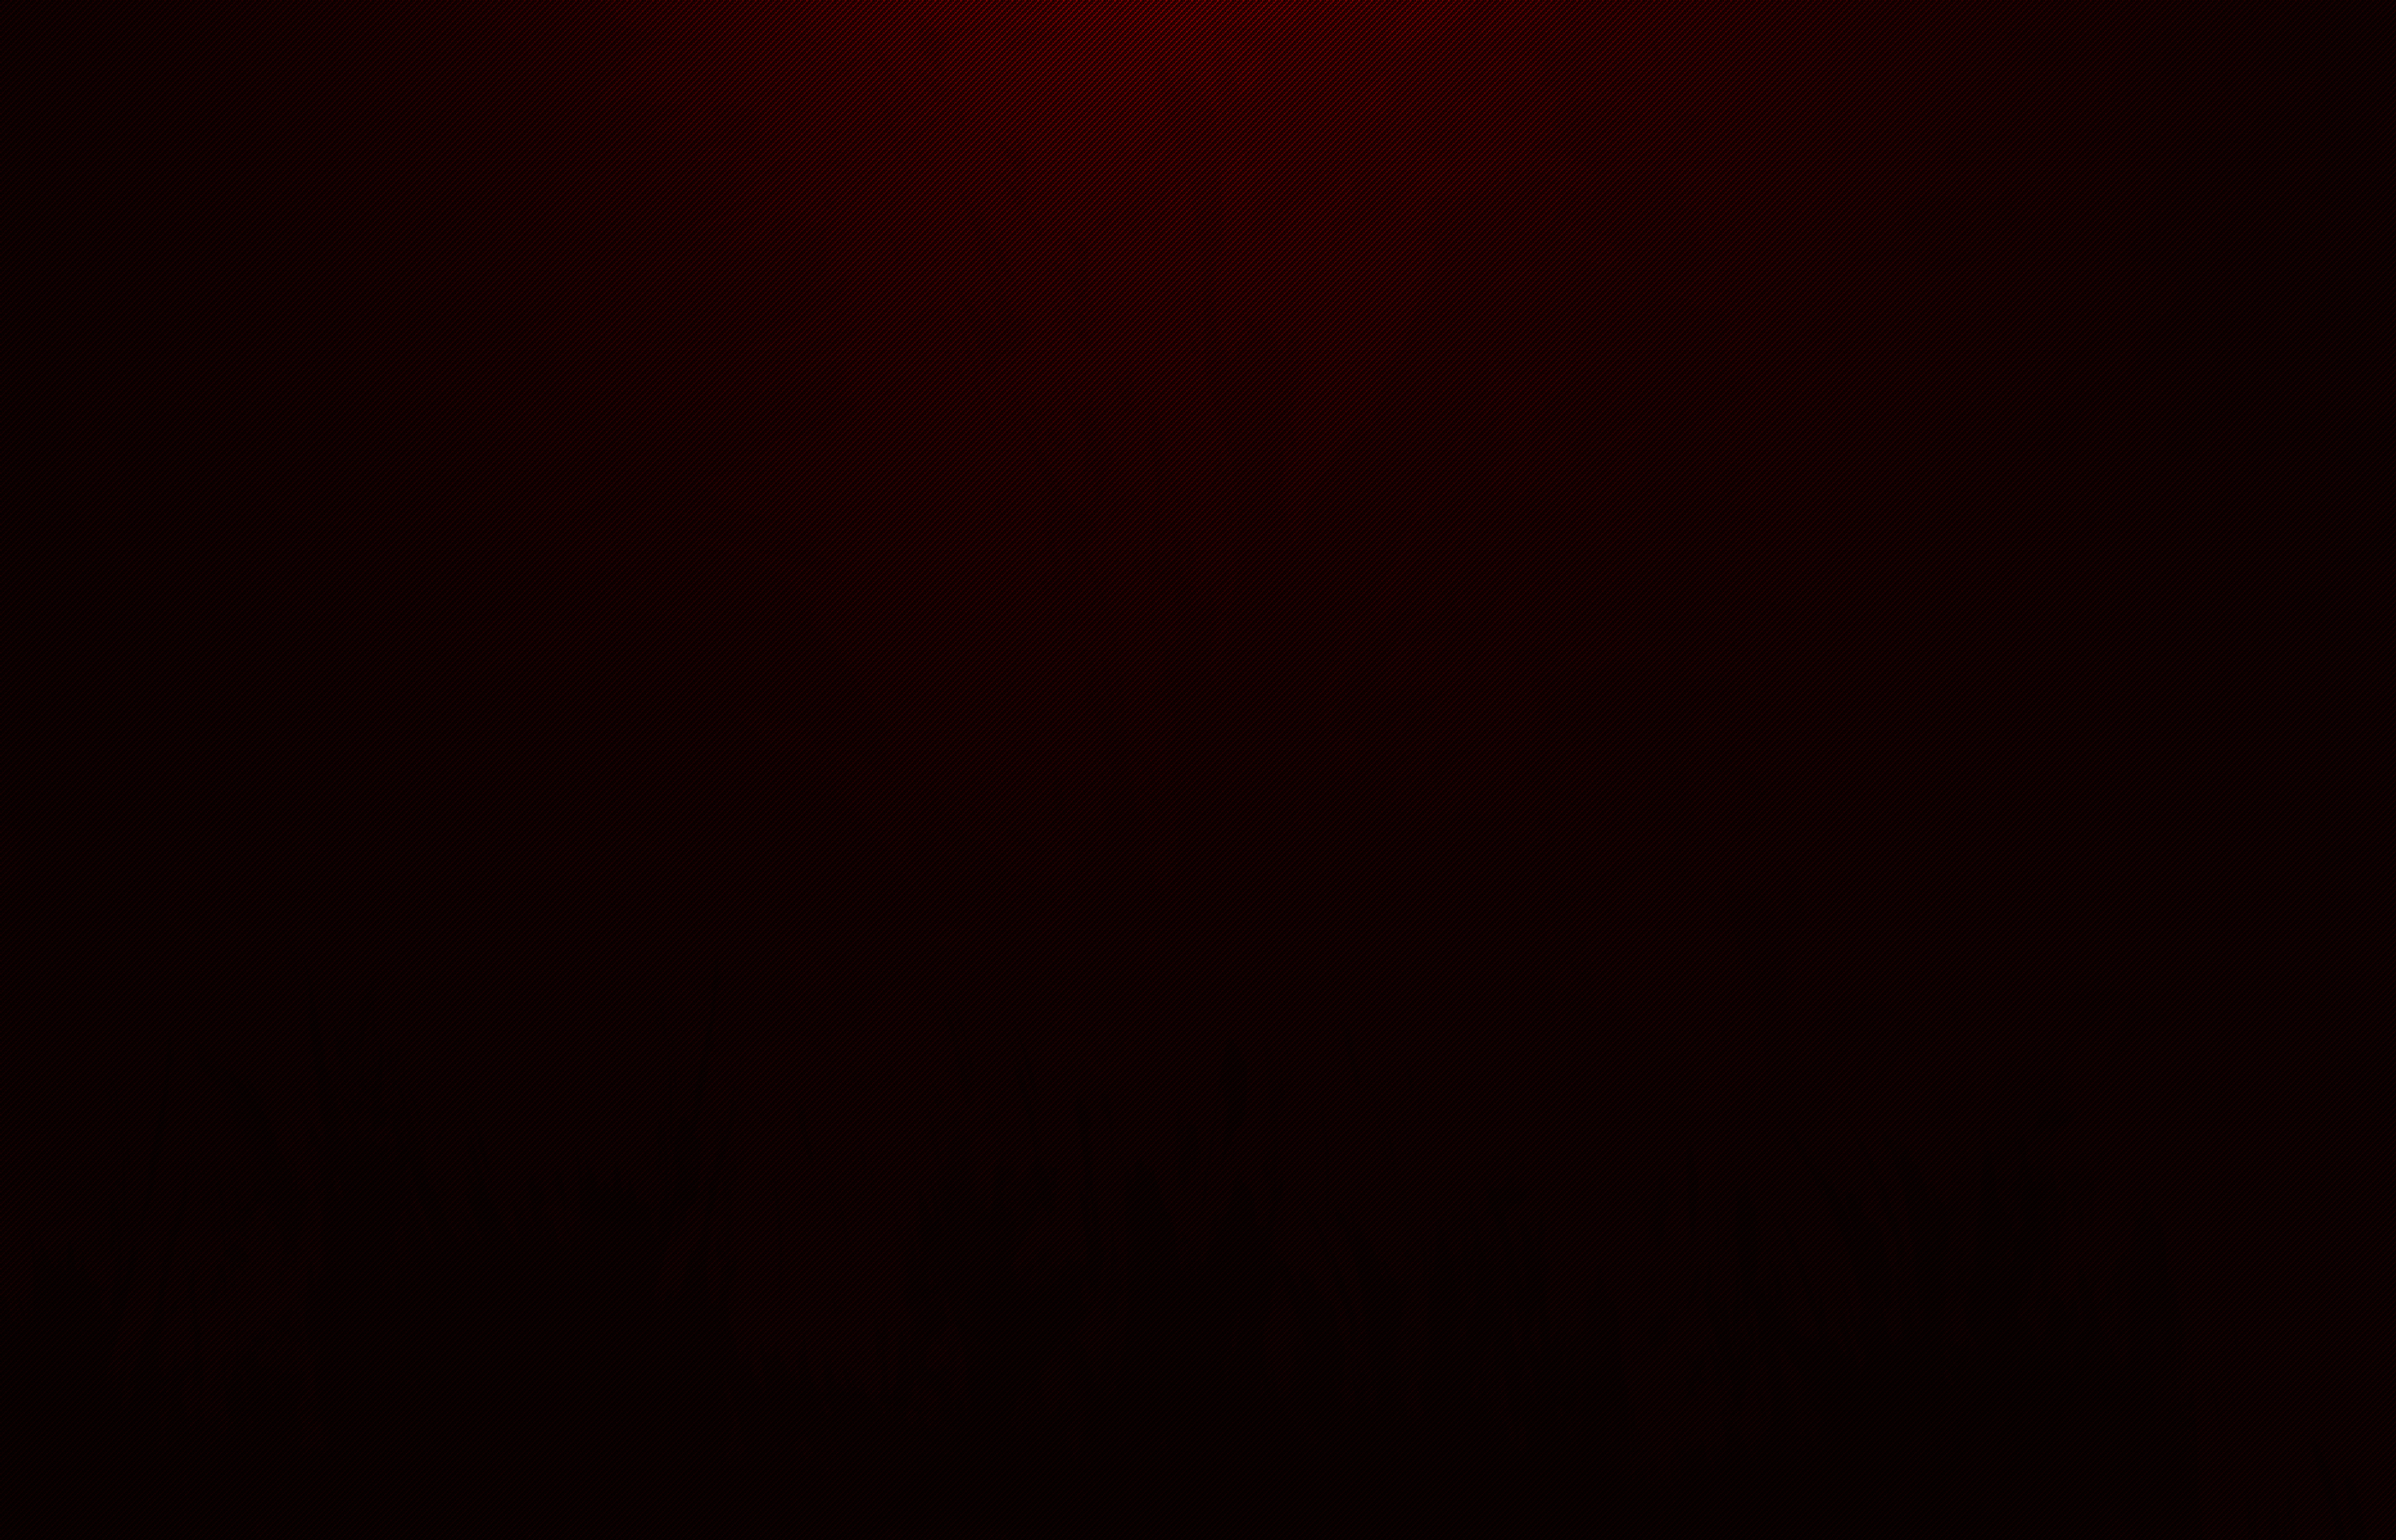 Dark Red Background Wallpaper Image